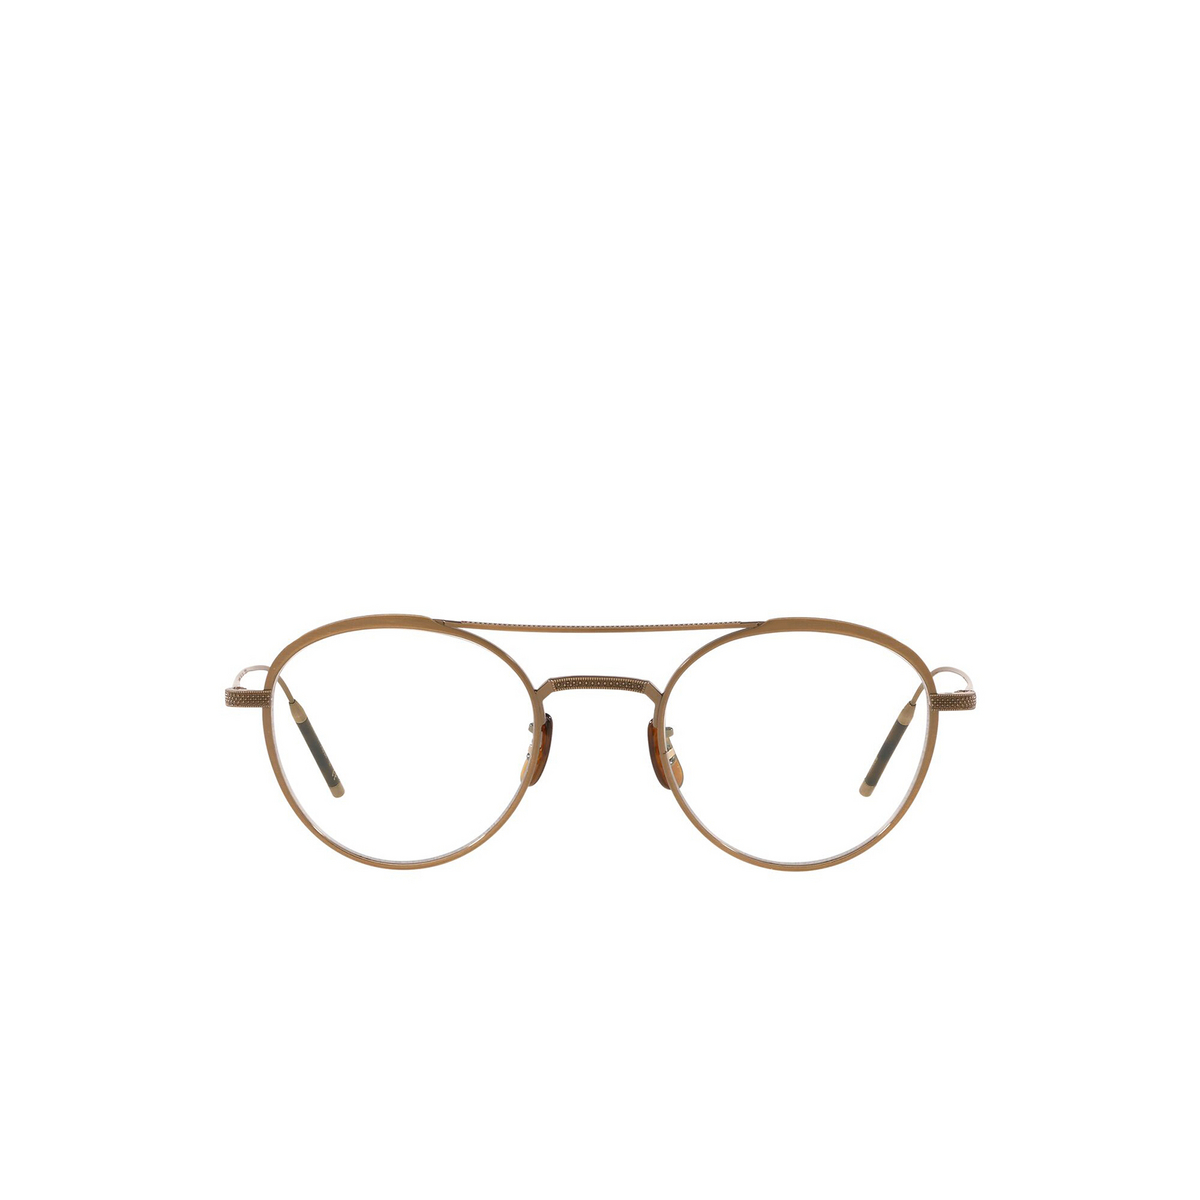 Oliver Peoples TK-2 Eyeglasses 5284 Antique Gold - front view